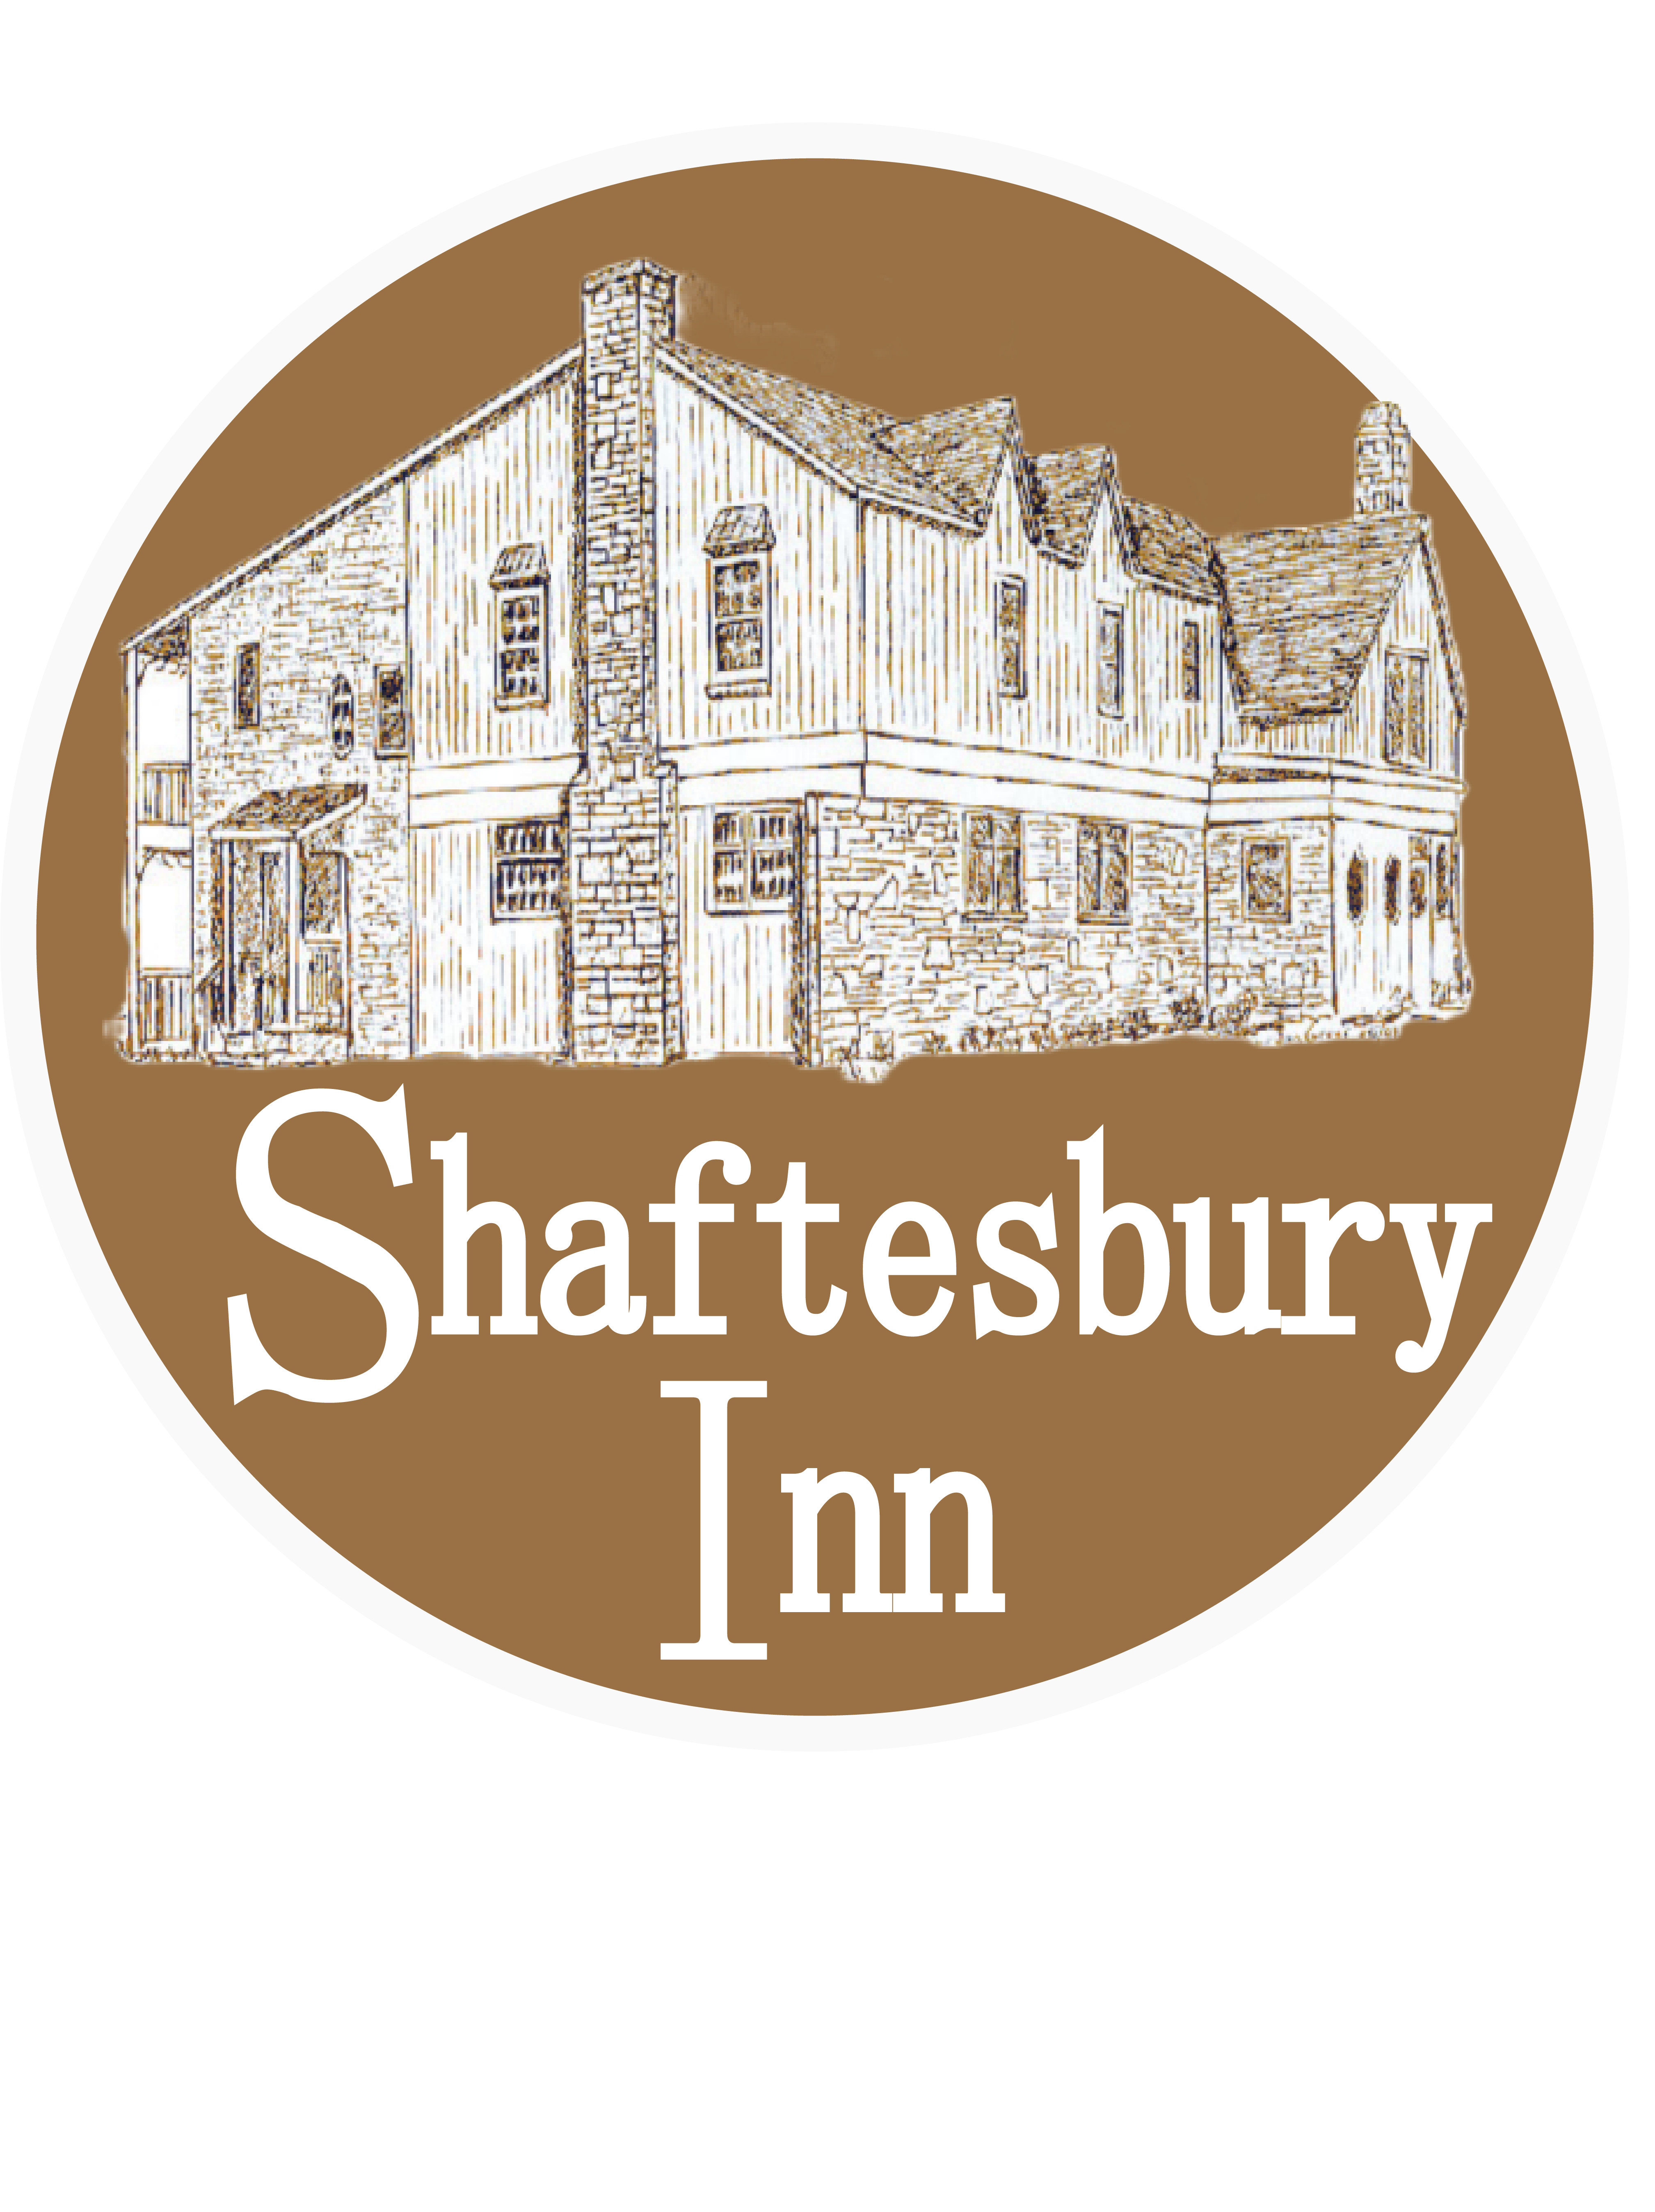 Shaftesbury inn logo